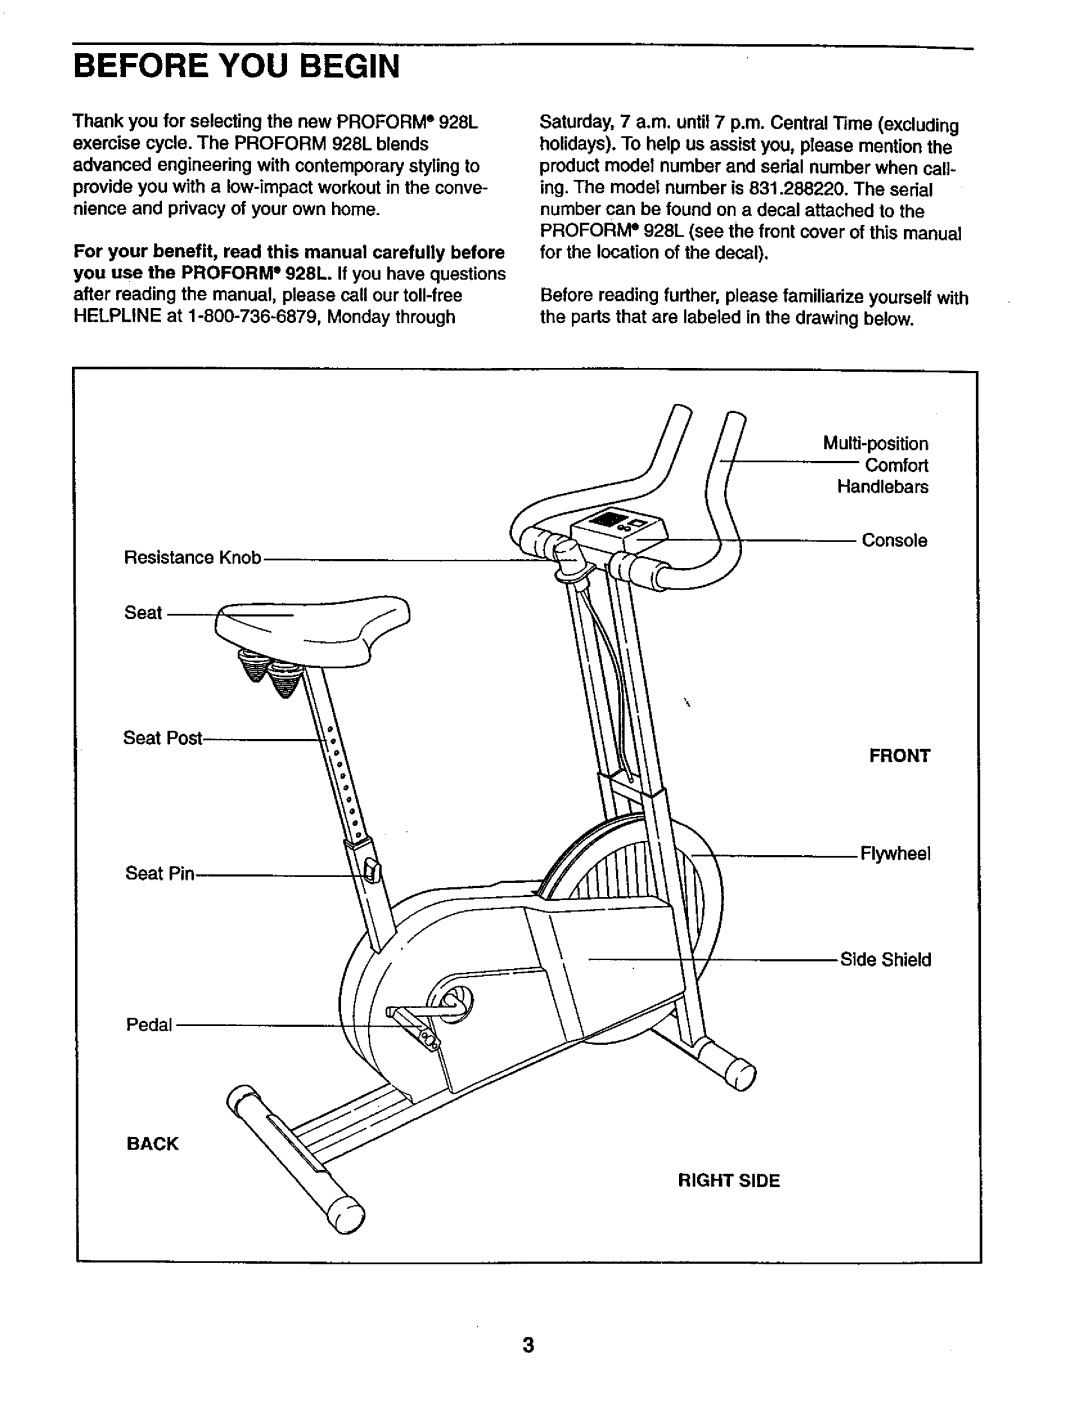 Sears 831.28822 user manual Before You Begin, Multi-position Comfort, Handlebars 